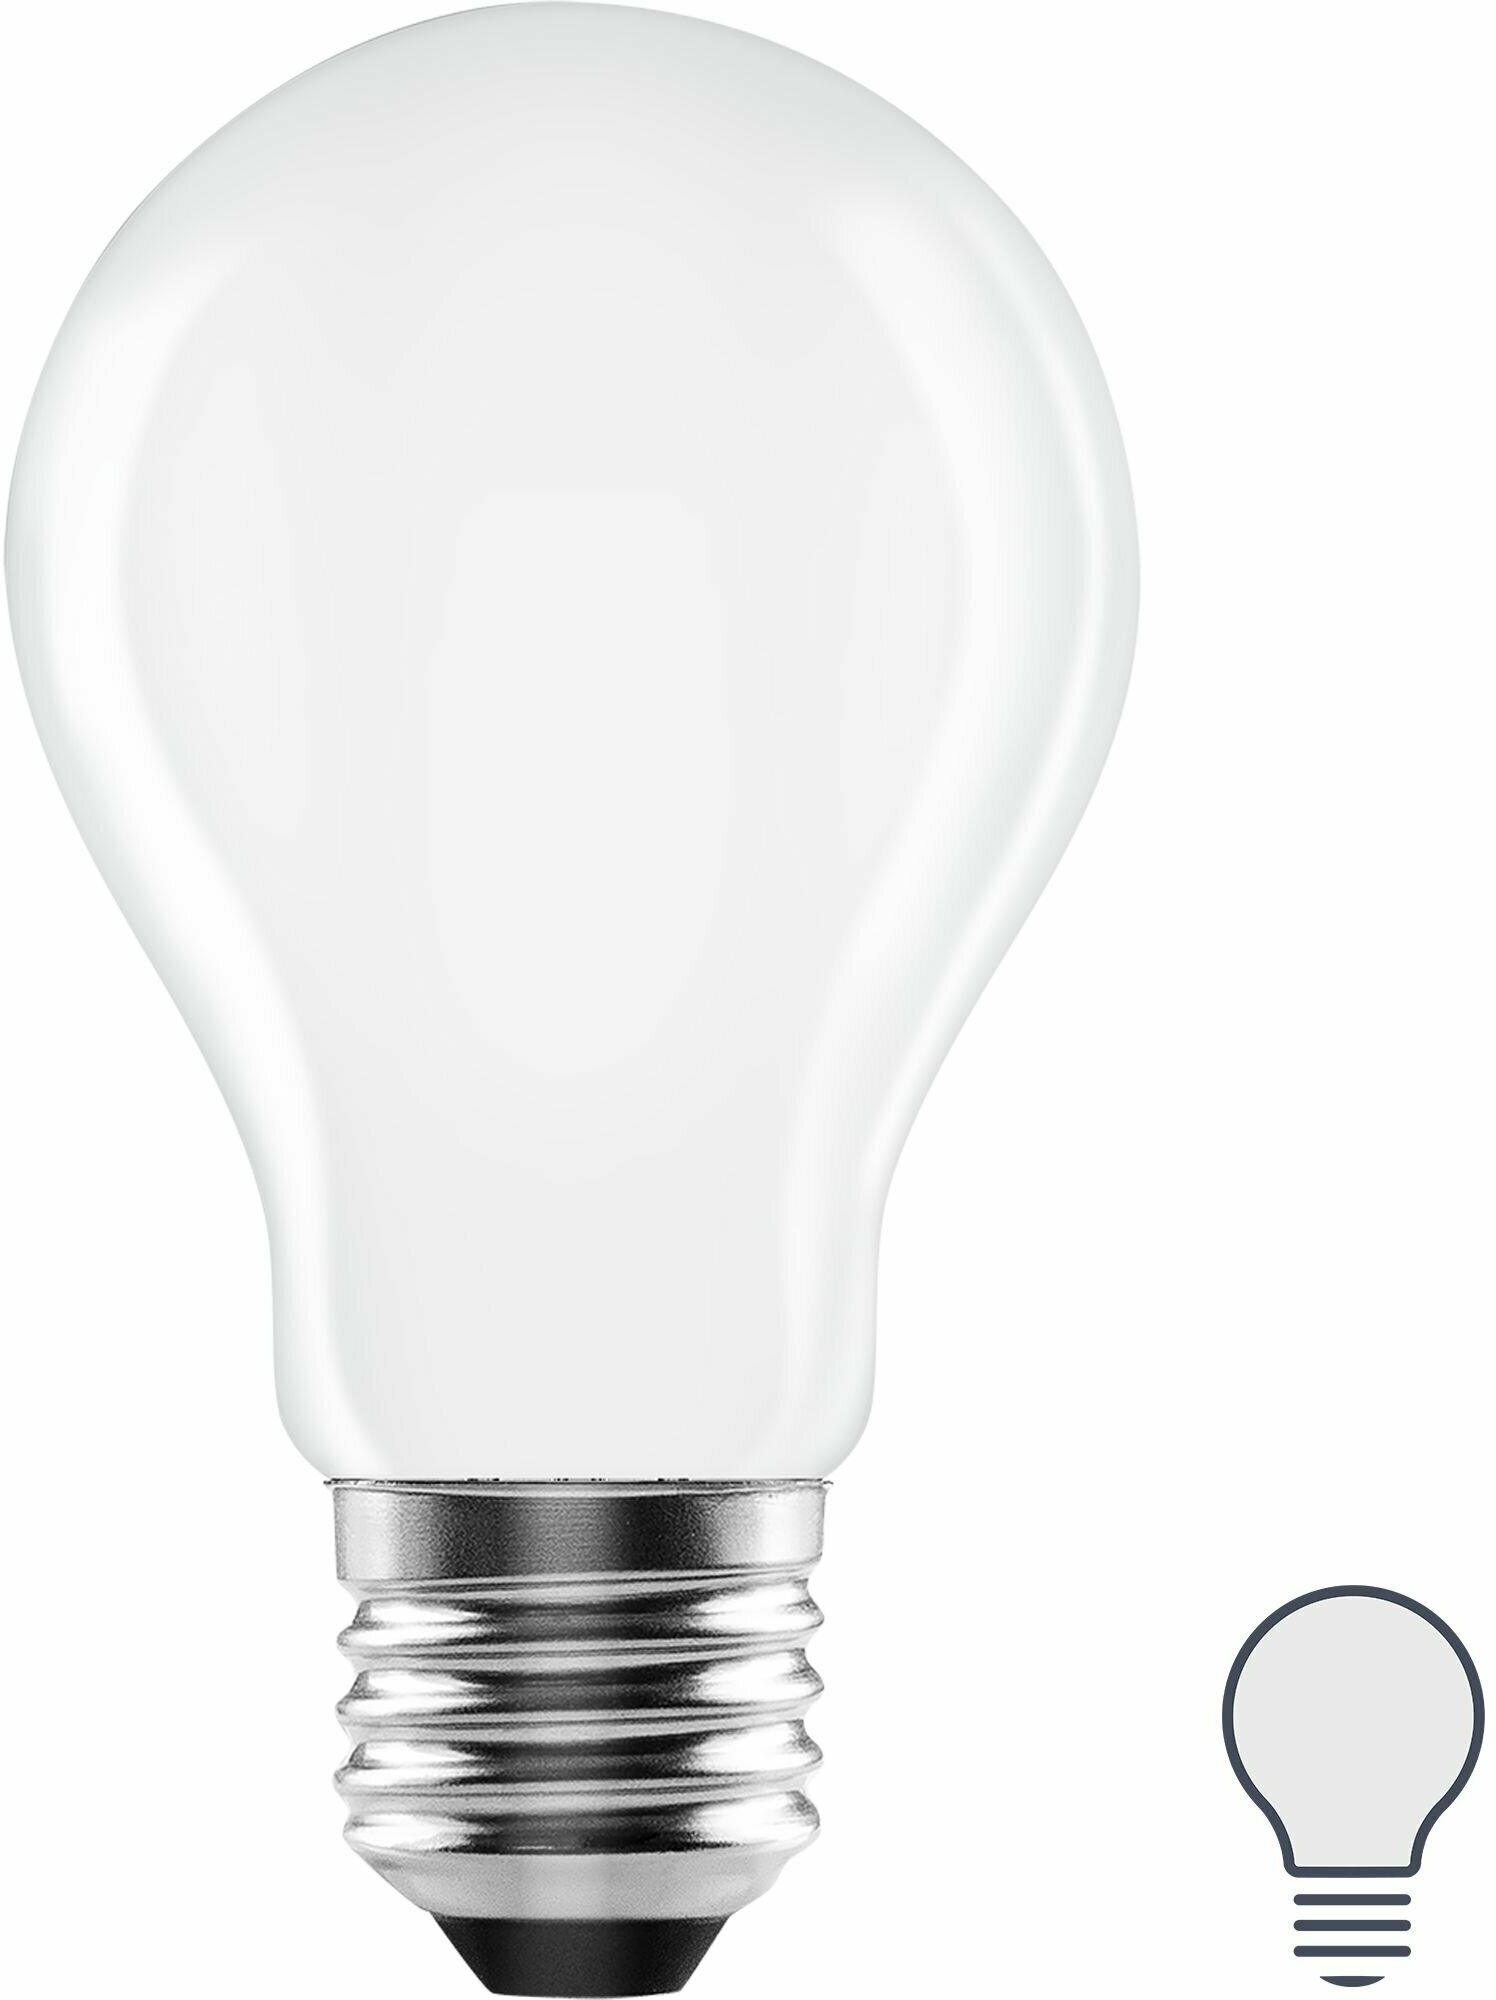 Лампа светодиодная Lexman E27 220-240 В 5 Вт груша матовая 600 лм нейтральный белый свет